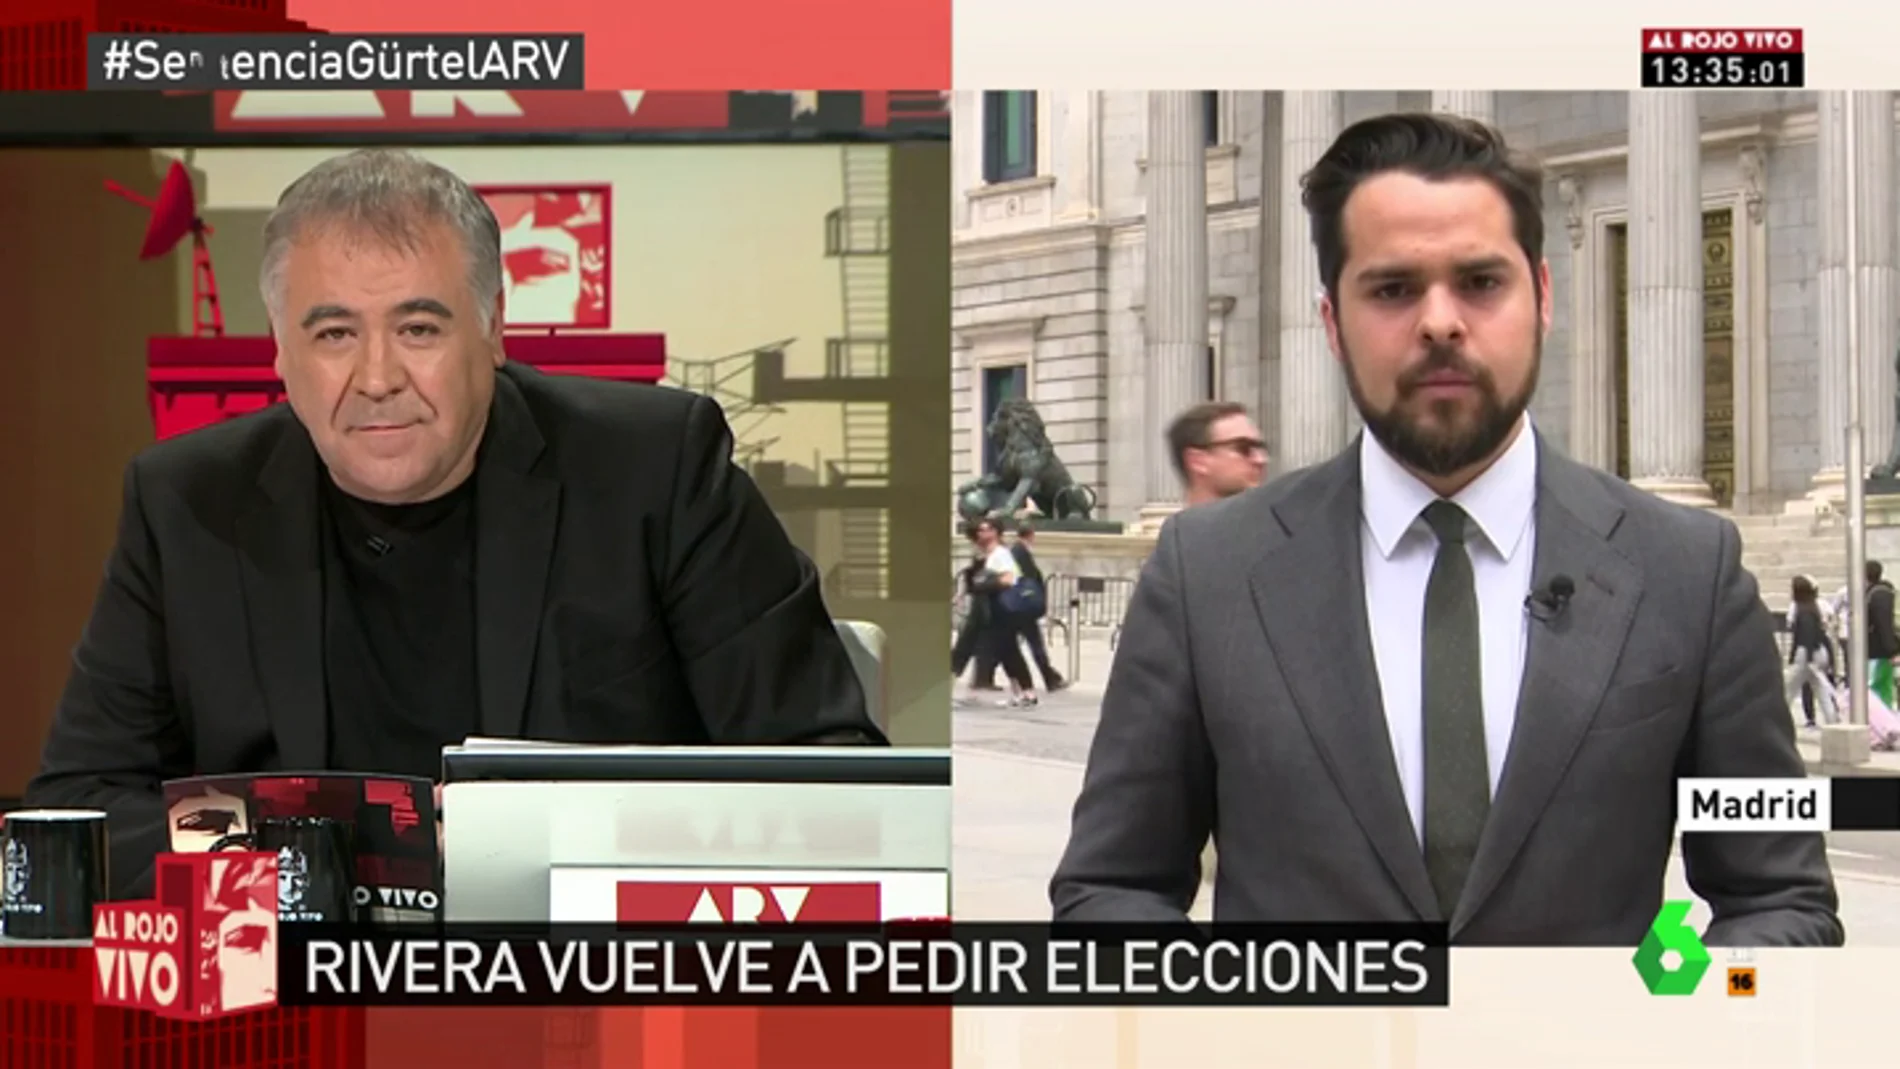 Fernando de Páramo: "Más del 70% de los españoles quieren elecciones, según los datos publicados"